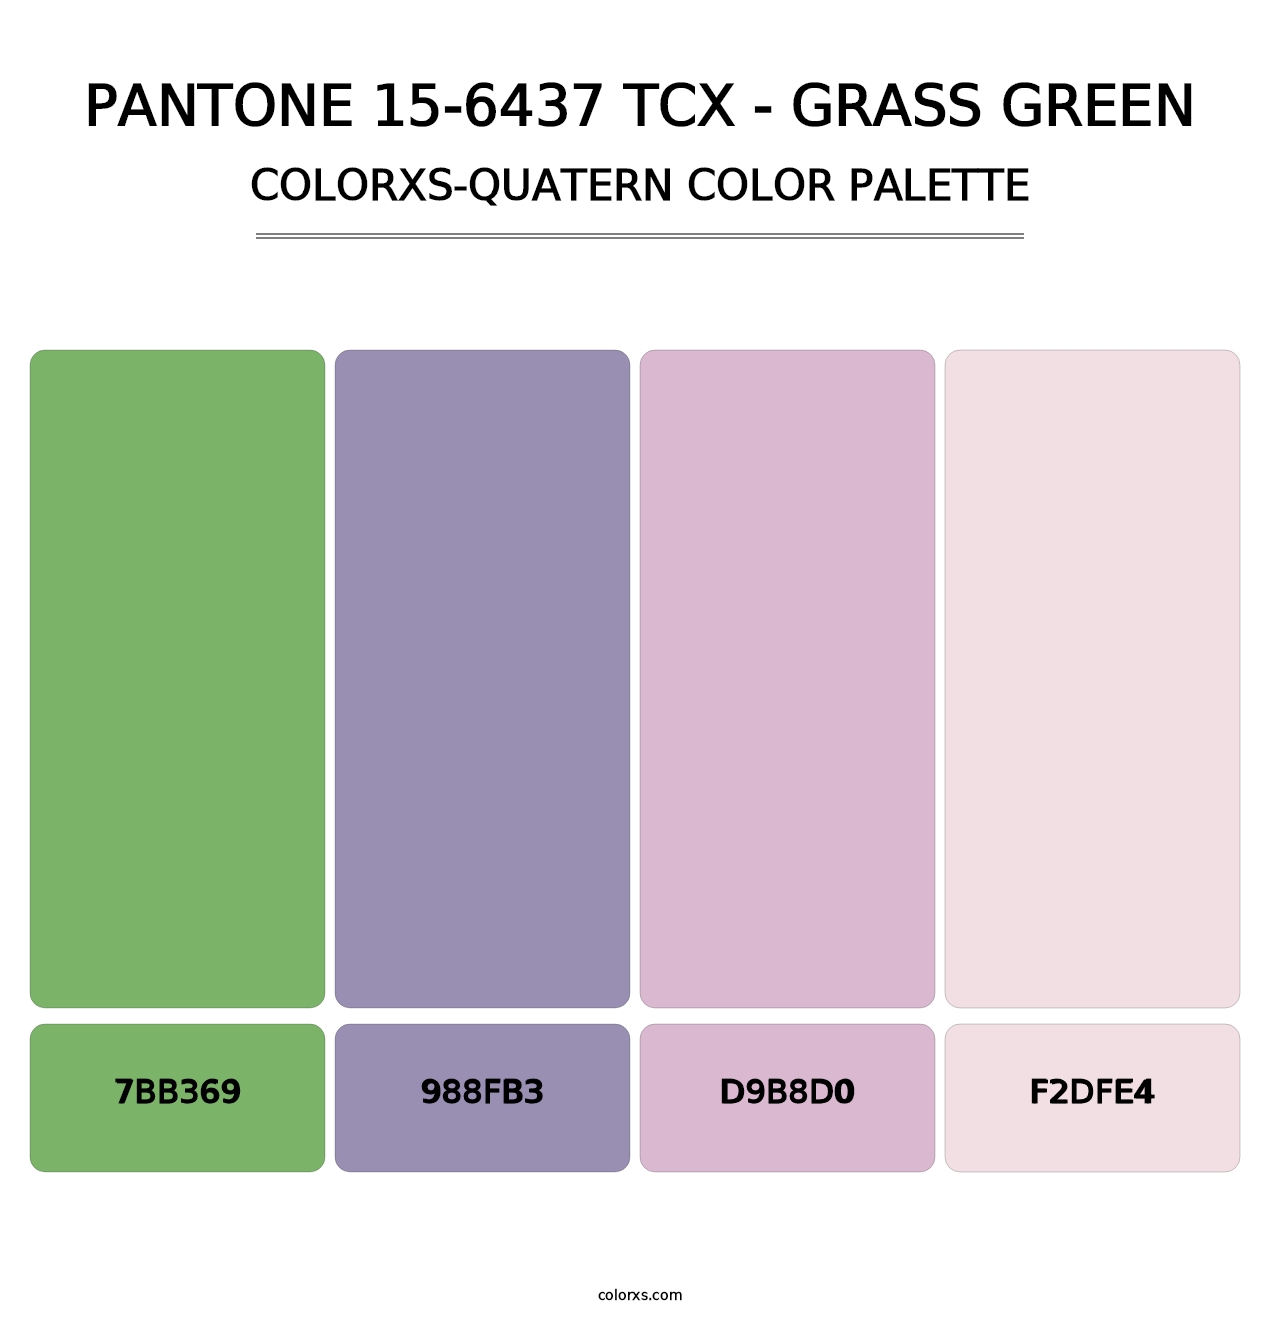 PANTONE 15-6437 TCX - Grass Green - Colorxs Quatern Palette